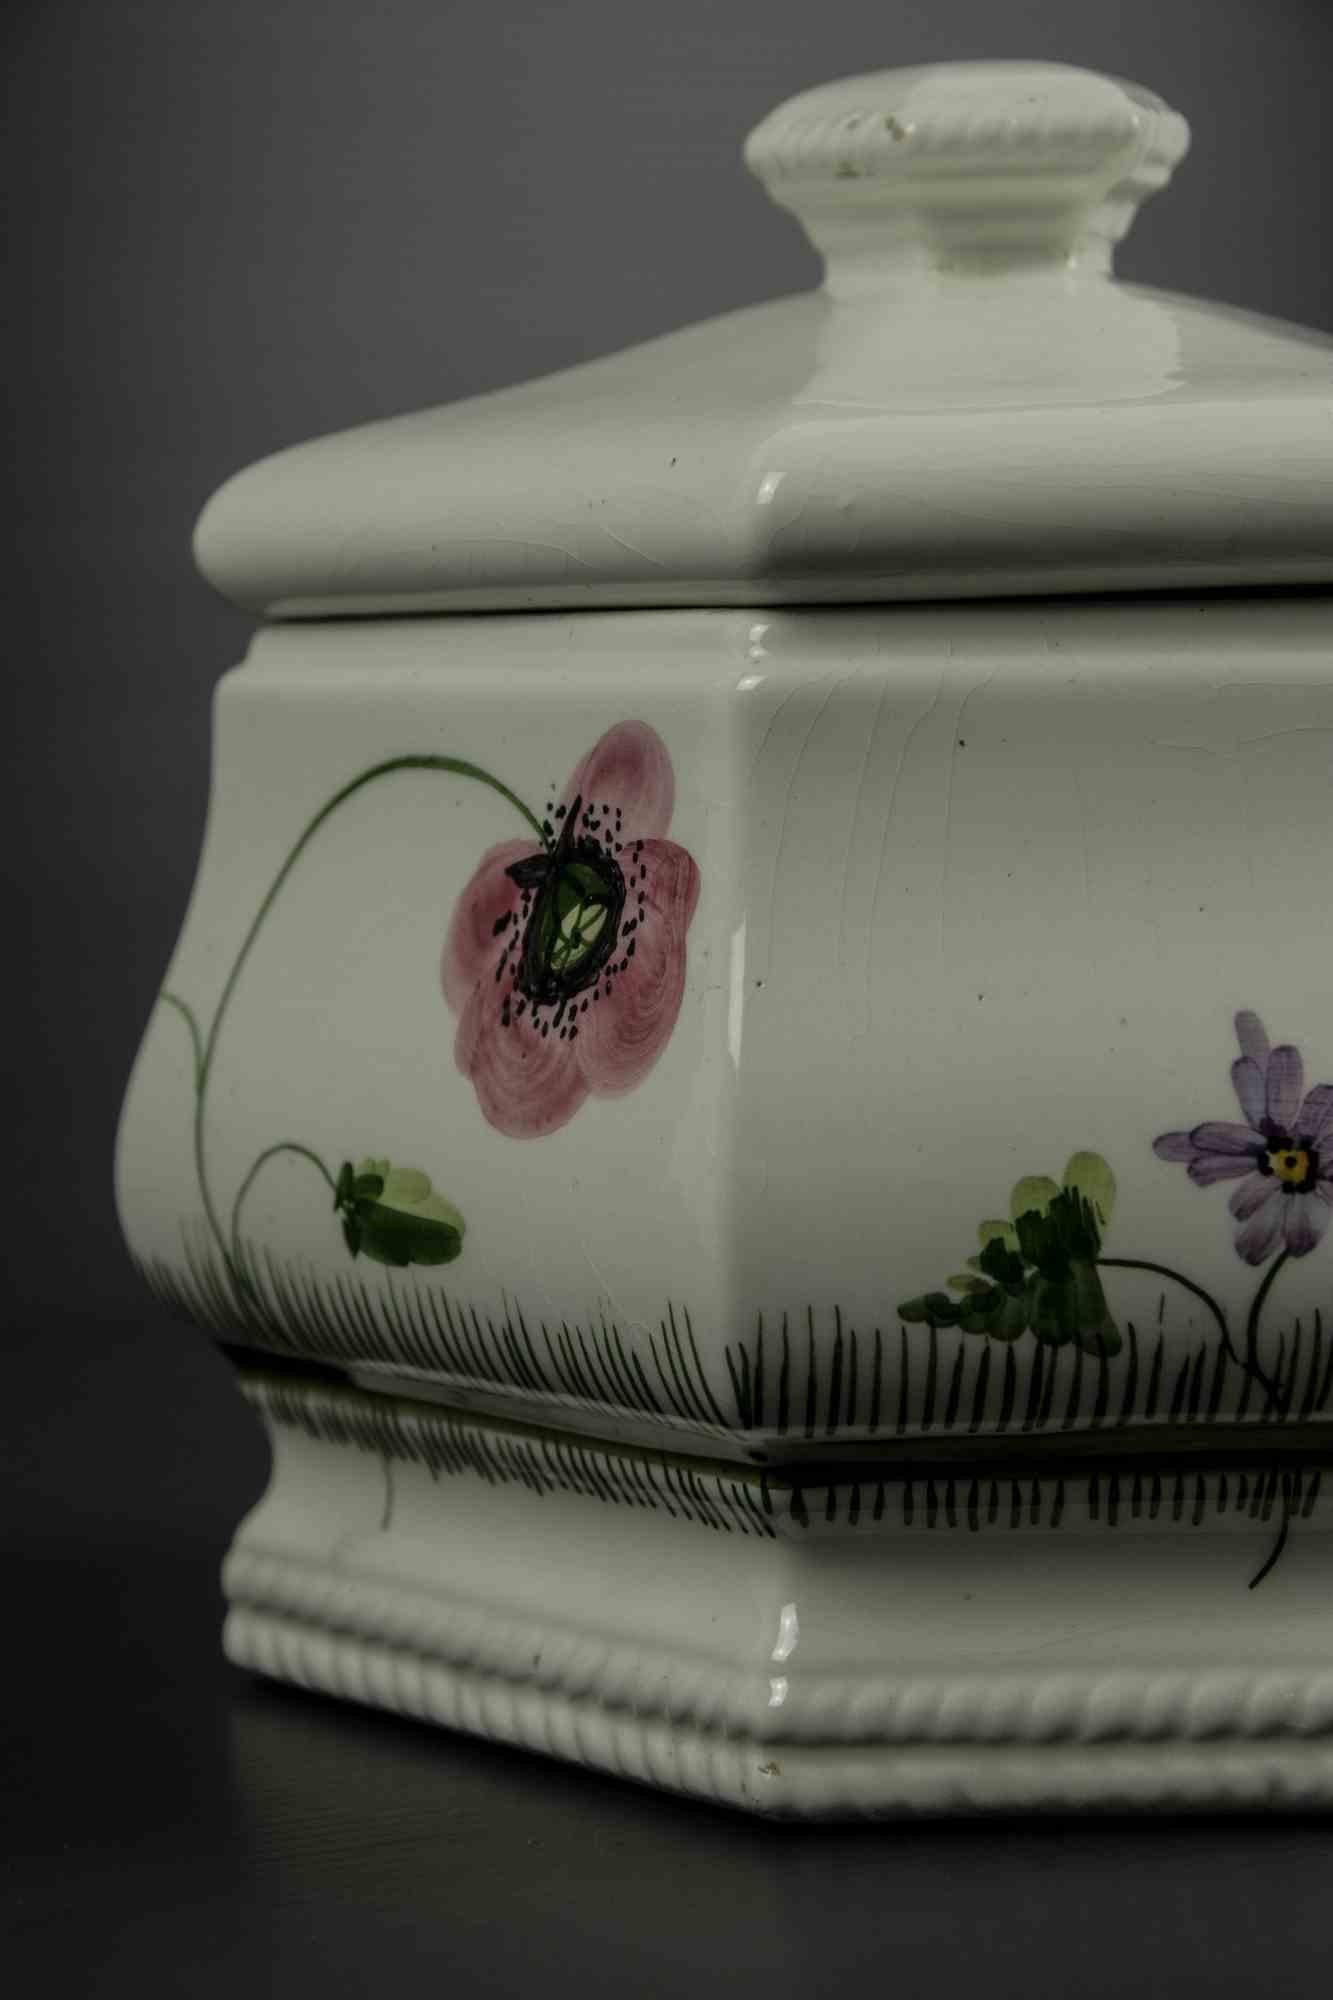 Le bol à soupe est un objet décoratif original réalisé au milieu du 20e siècle.

Céramique originale. 

Fabriqué à la main et coloré à la main.

Fabriqué en Italie.

Le bol est décoré de fleurs et d'oreilles de blé.

Dimensions totales :